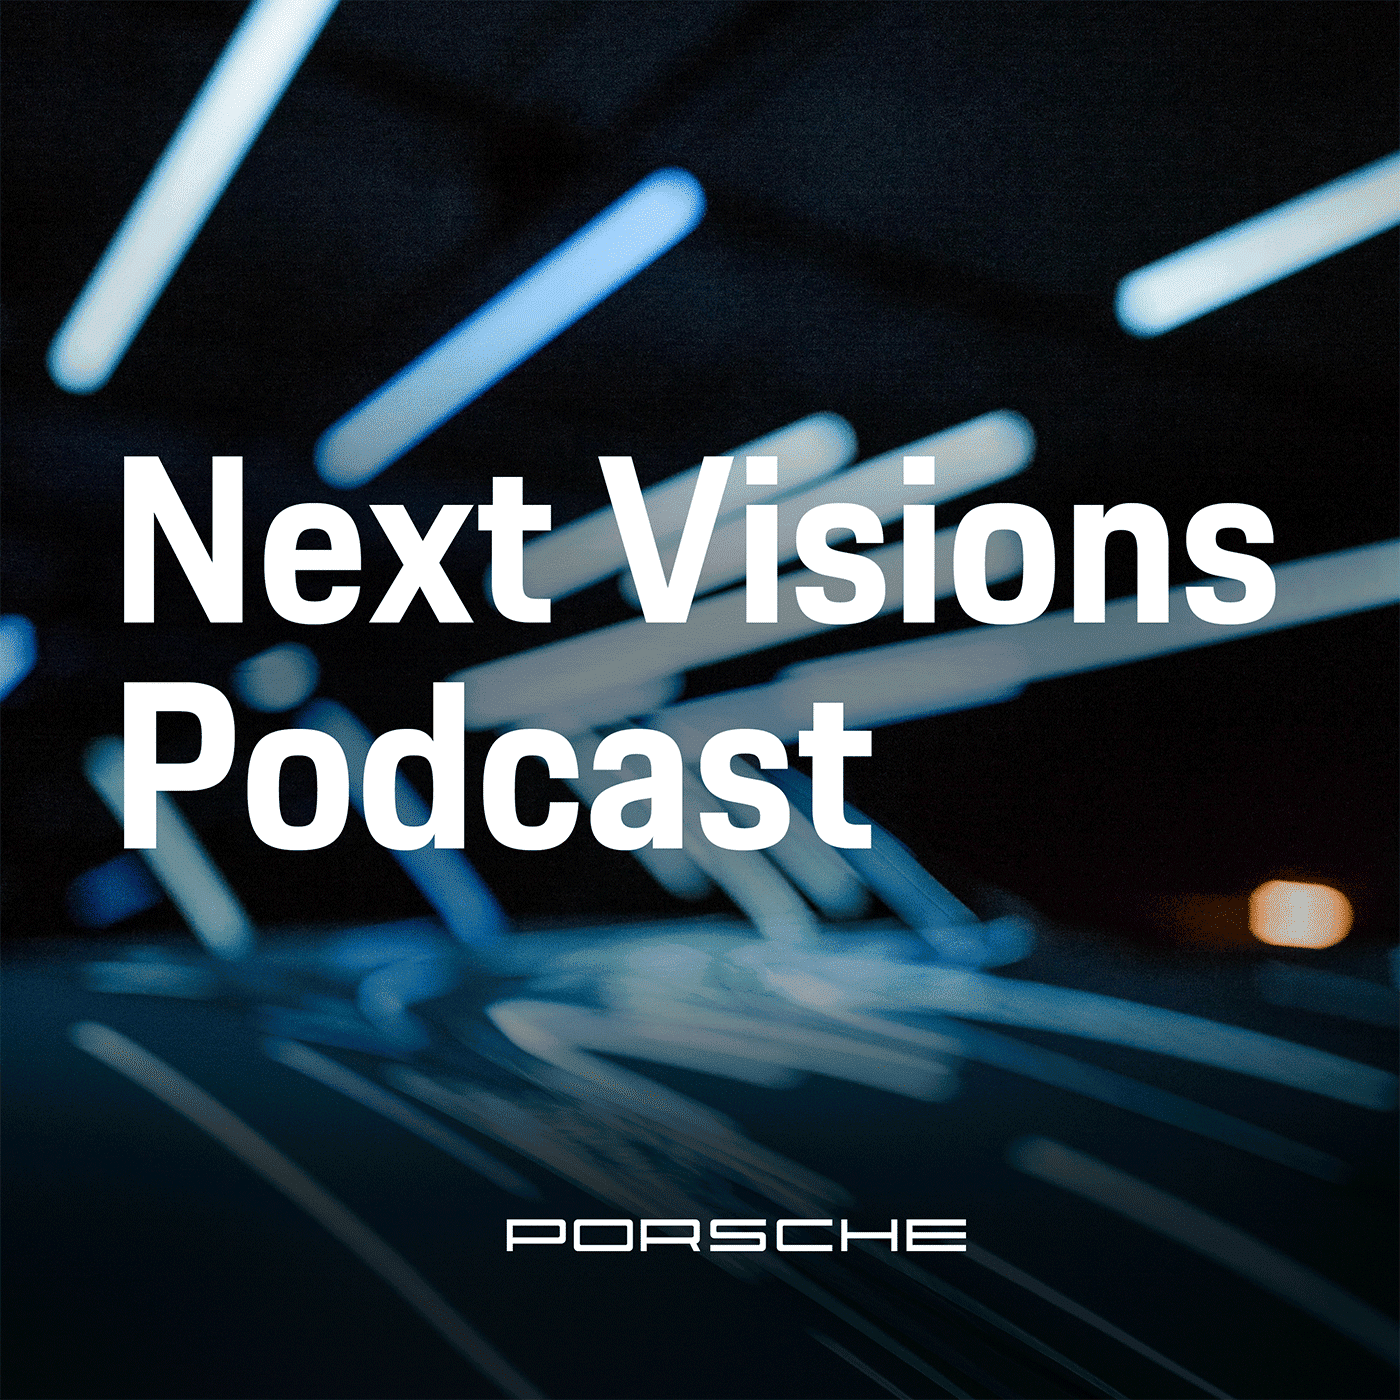 Podcast: Next Visions - Next Visions - Vordenker von heute über Themen von morgen